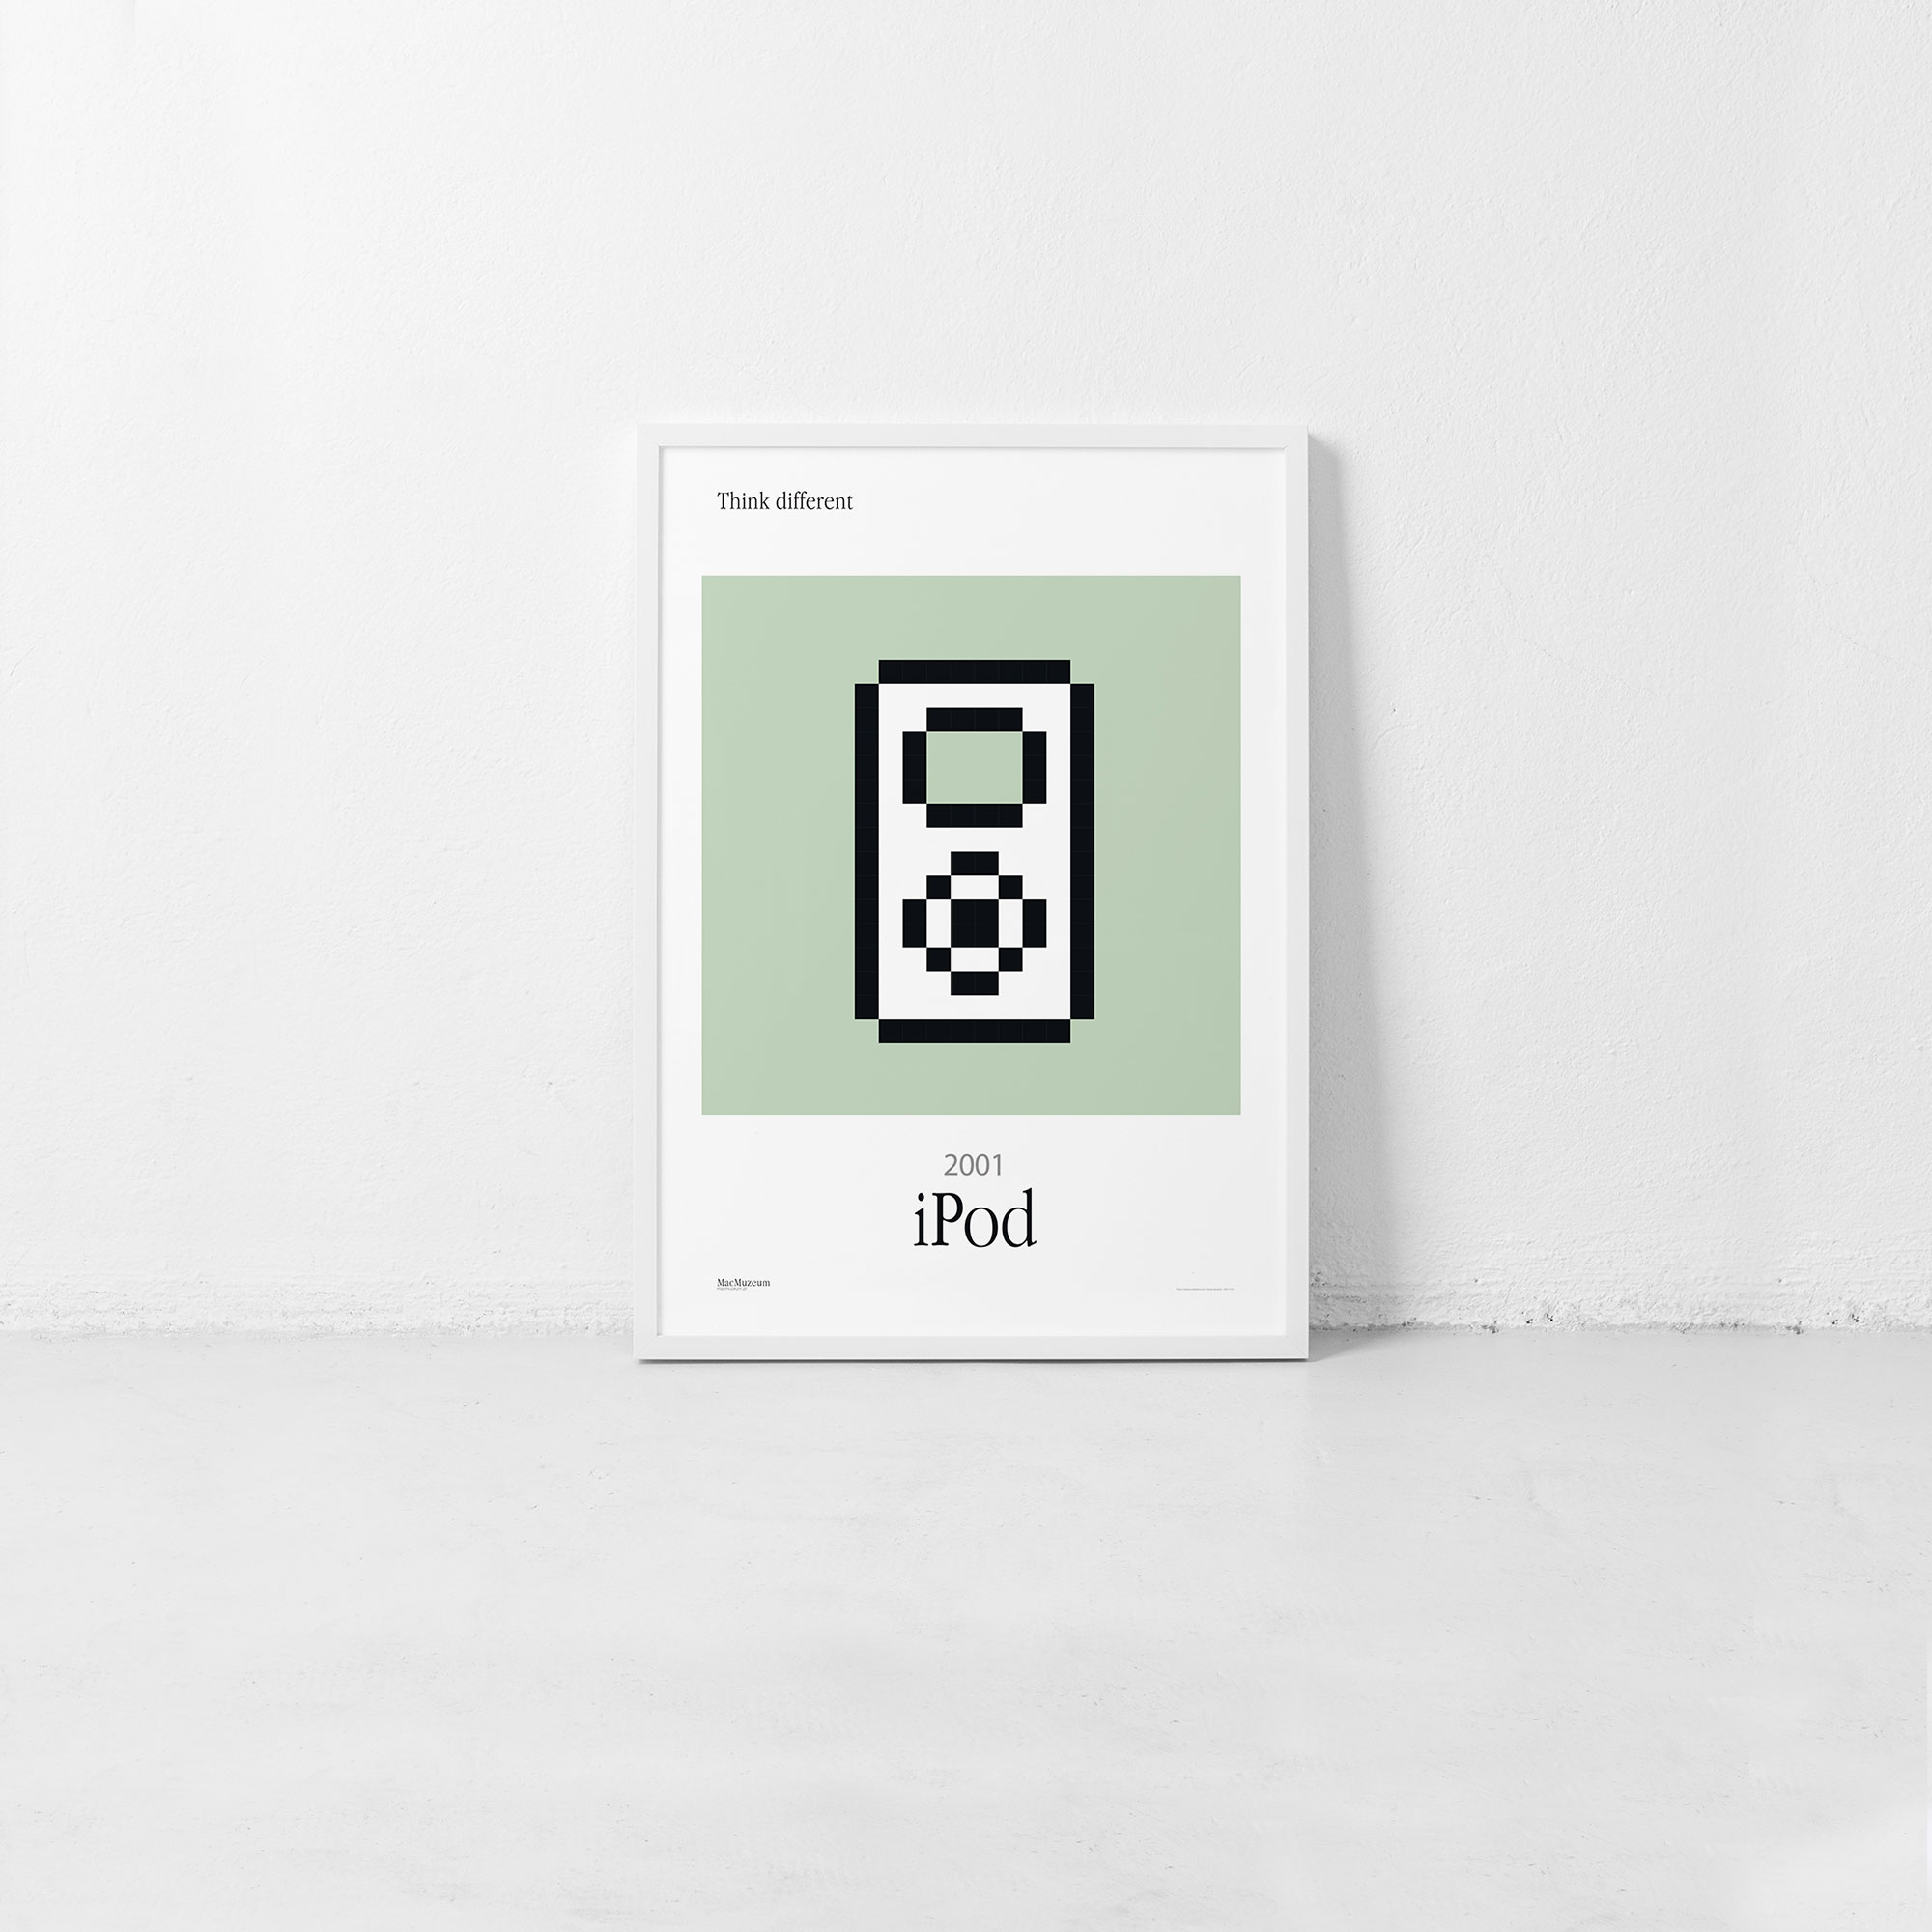 iPod – Iconic 2